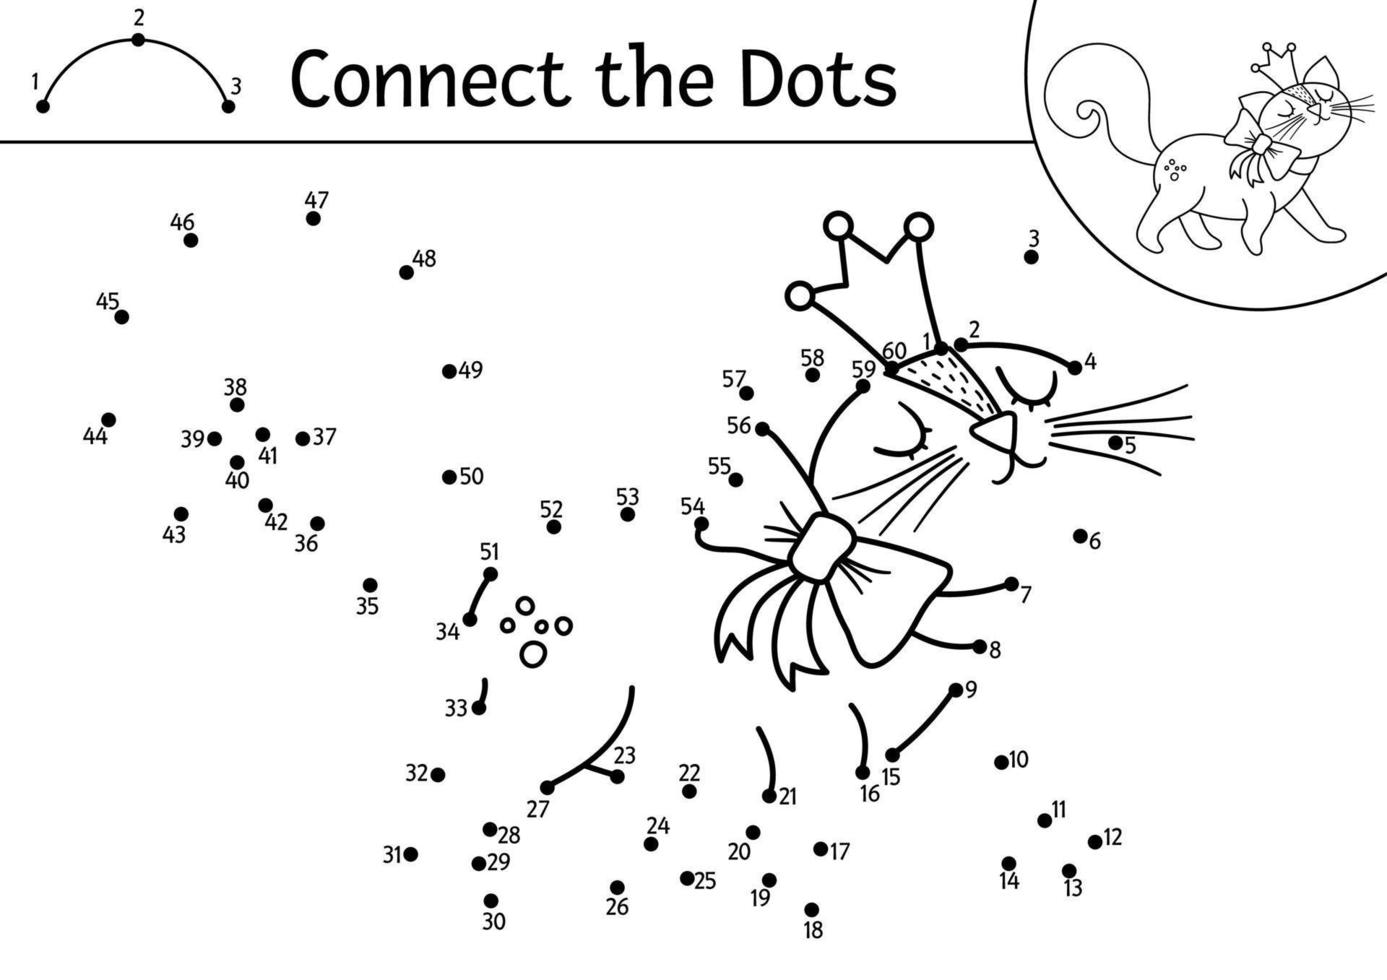 image vectorielle activité point à point et couleur avec chat mignon en couronne. Magic Kingdom relie le jeu de points pour les enfants avec un chaton fantastique. coloriage de conte de fées pour les enfants. feuille de calcul imprimable avec animal de compagnie vecteur